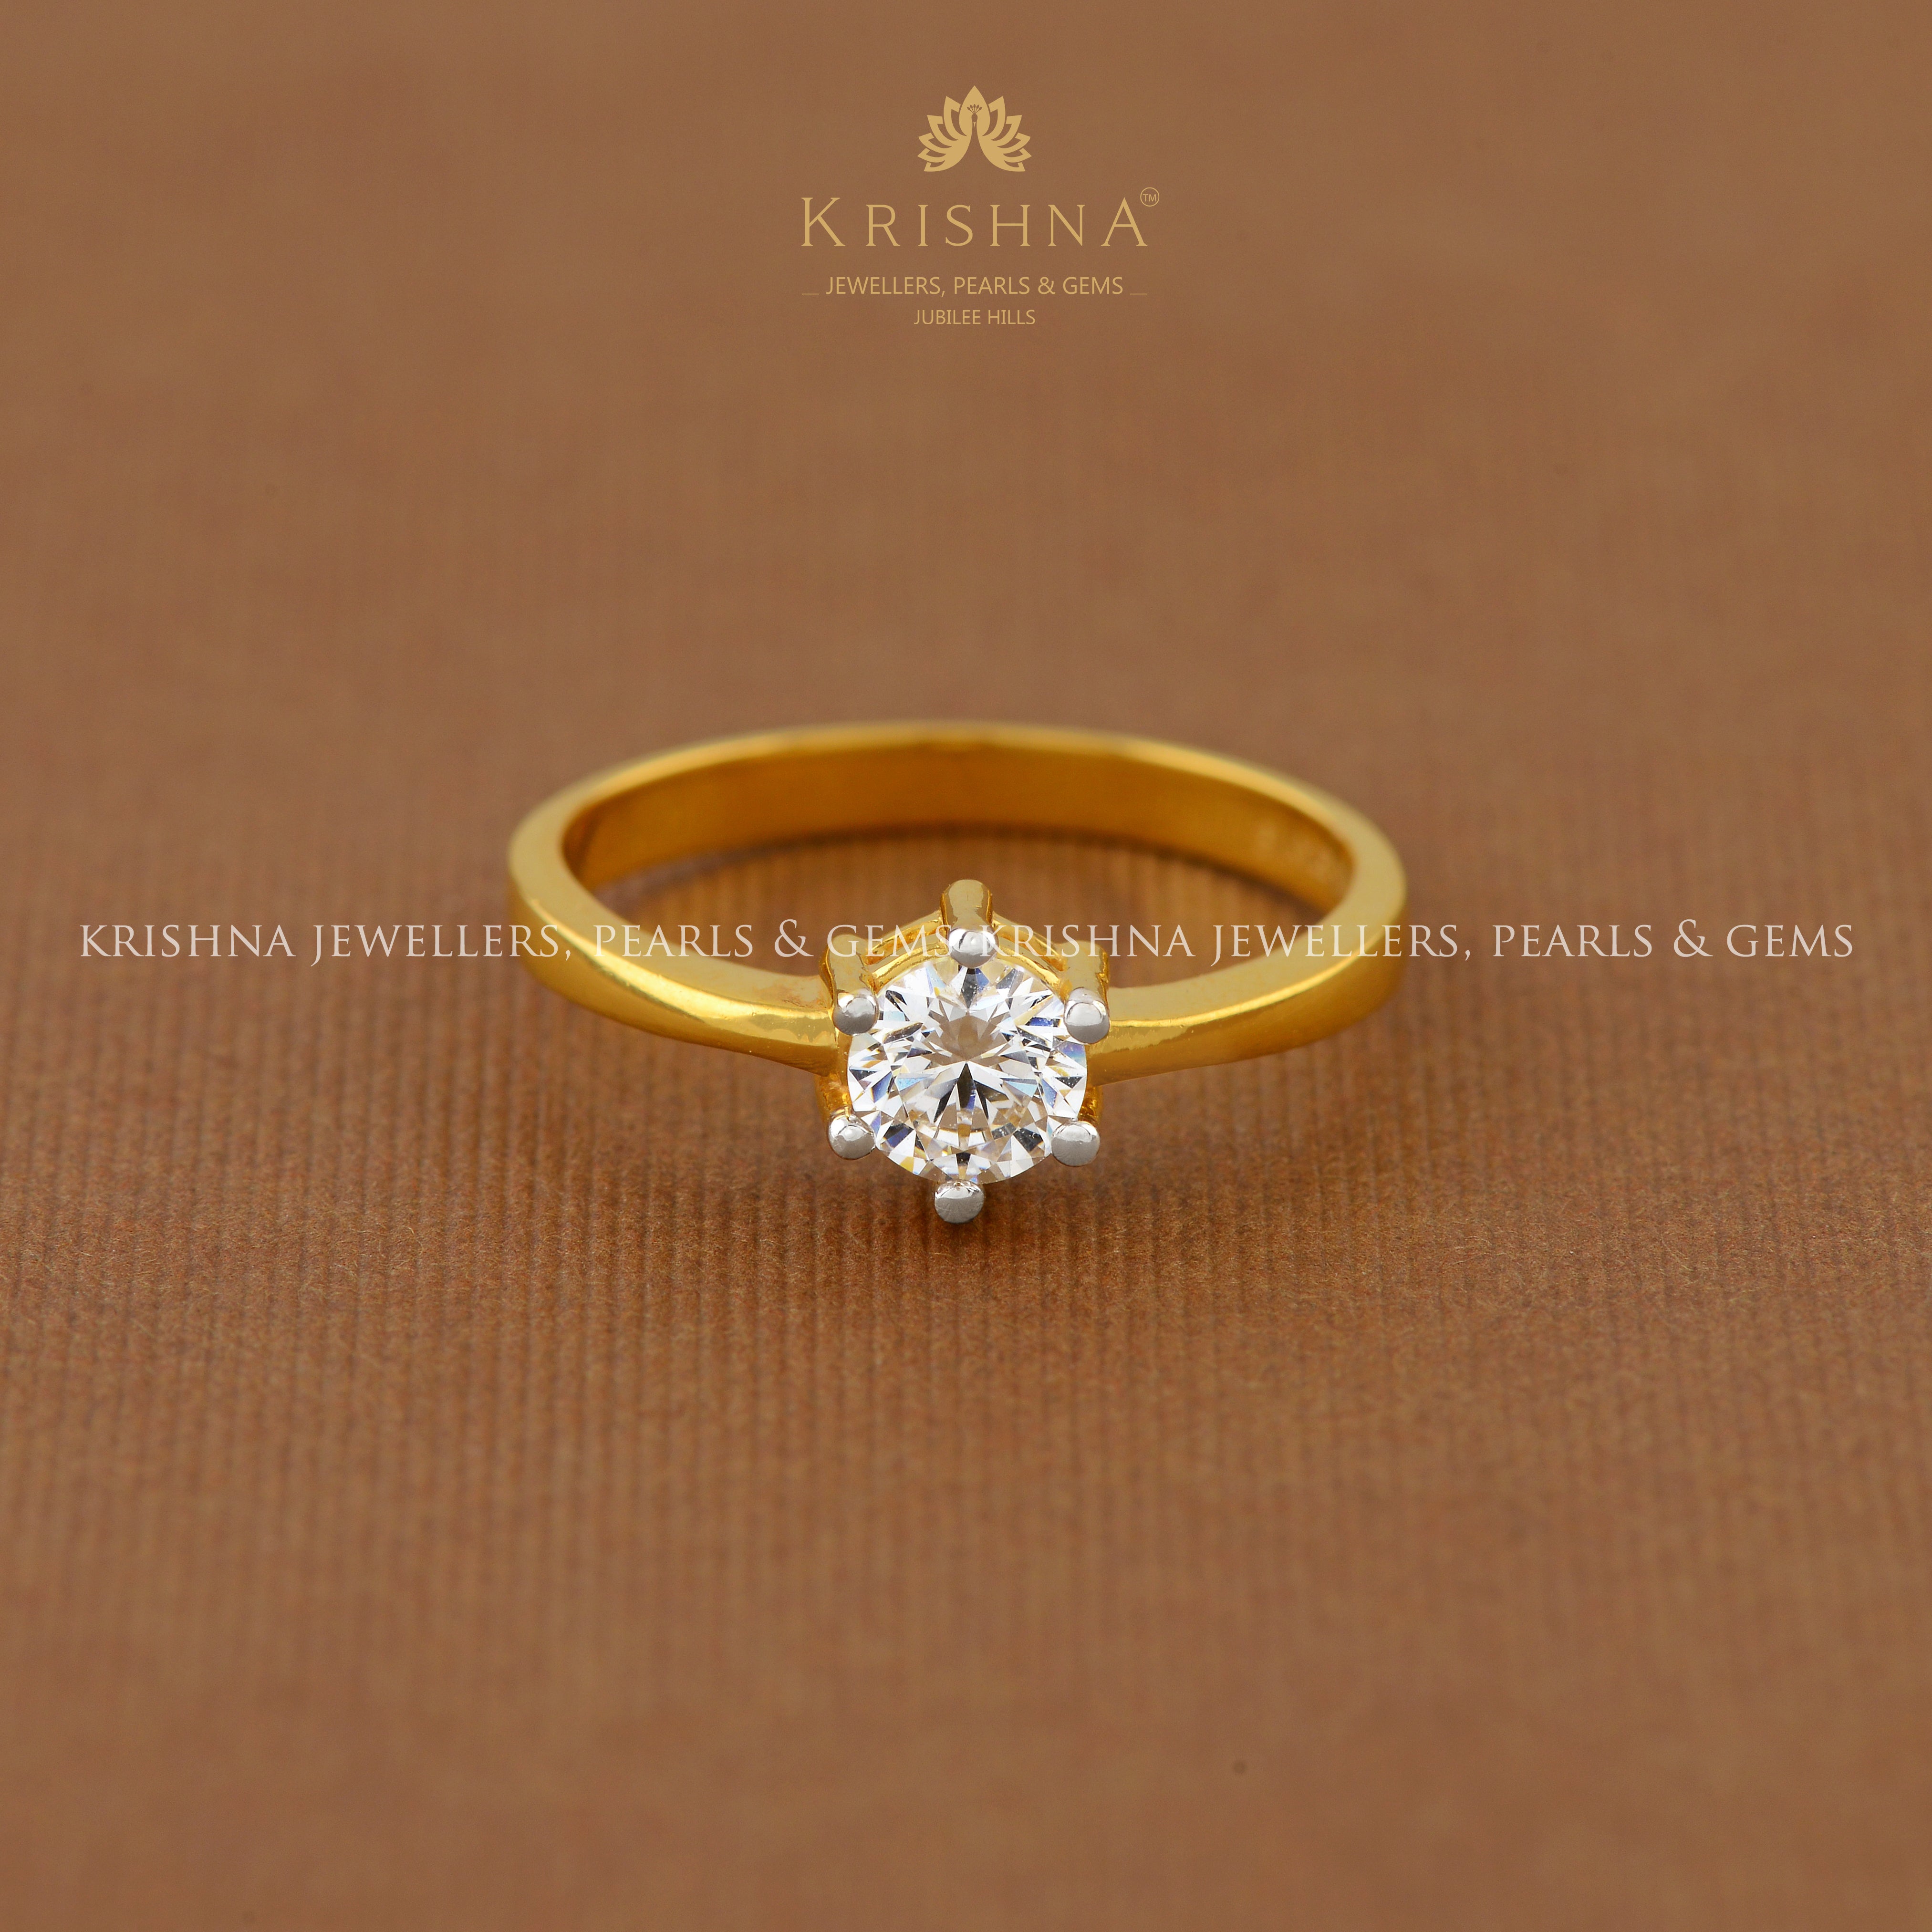 Premium Photo | Gold diamond engagement ring on women's hand